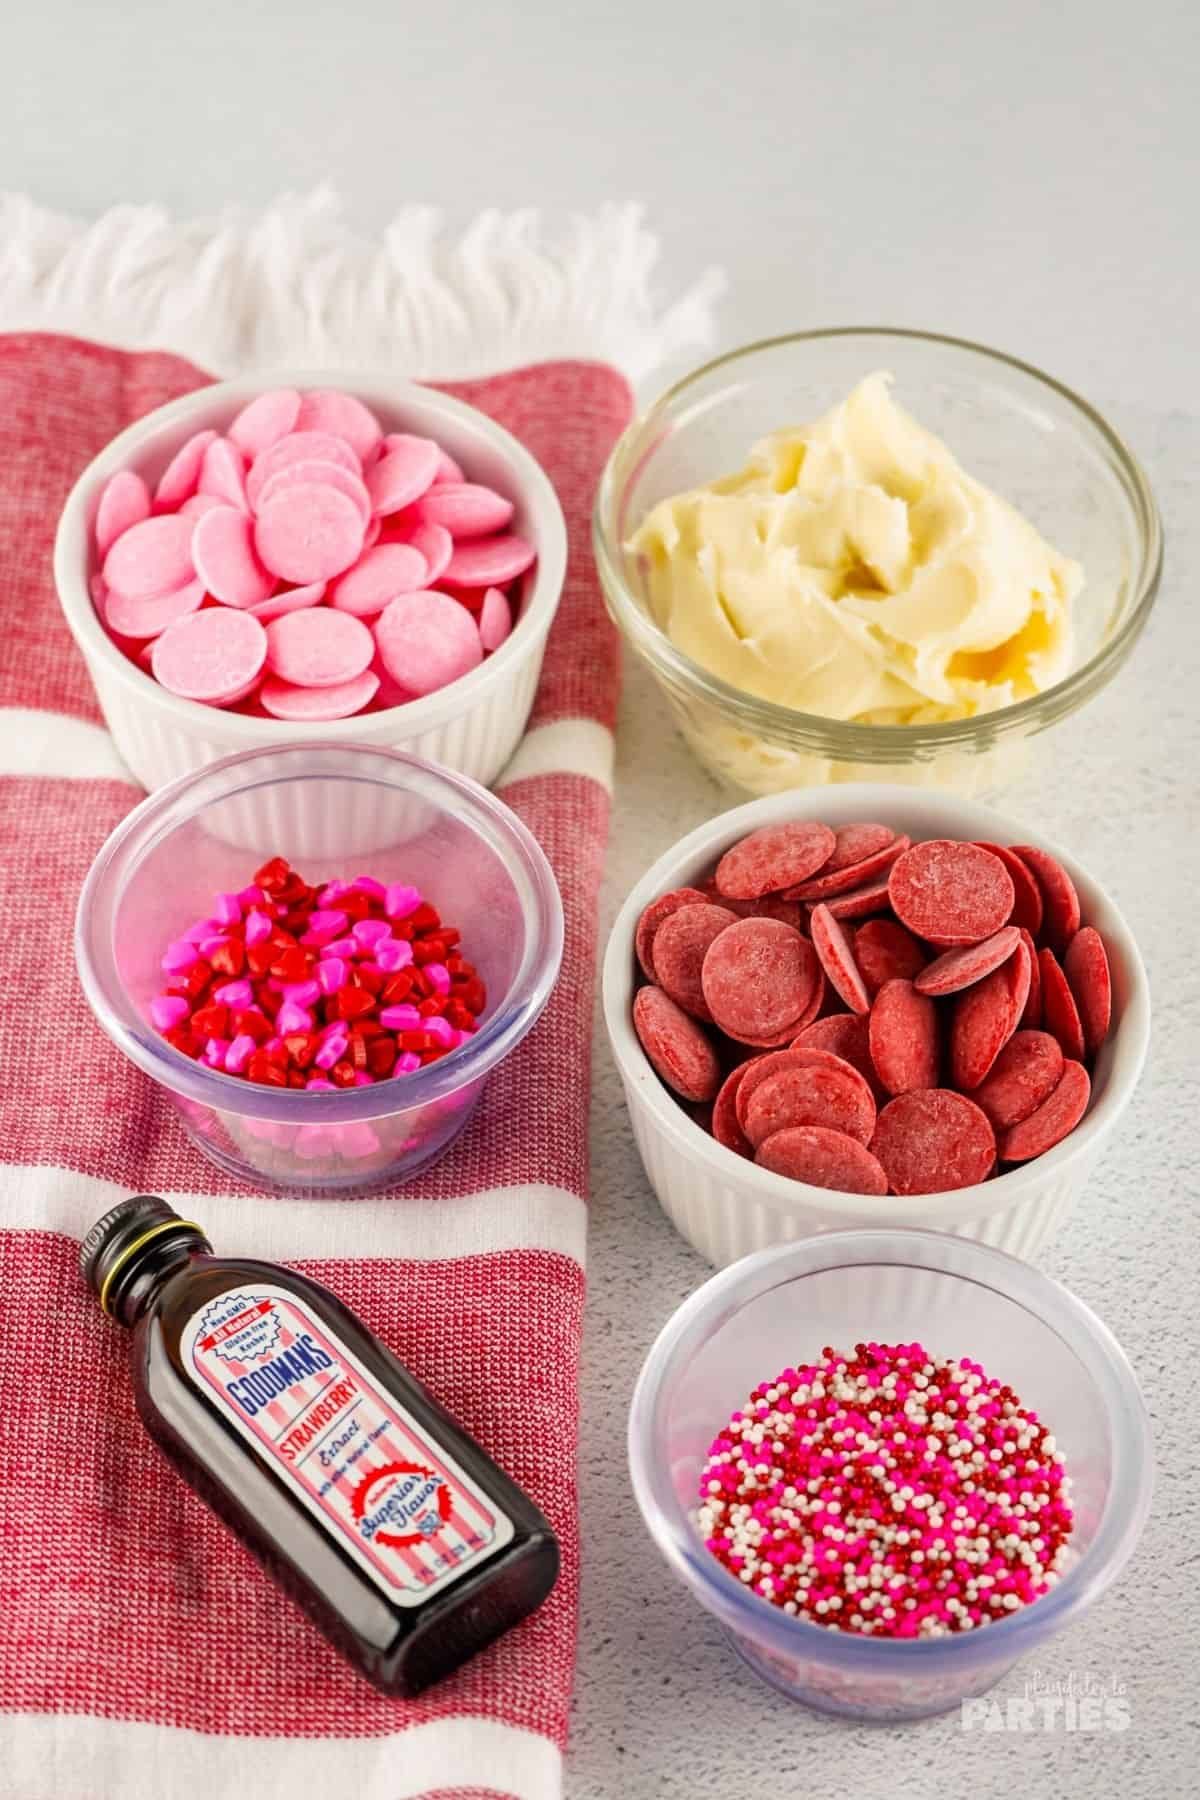 Ingredients for Valentine's Day fudge.